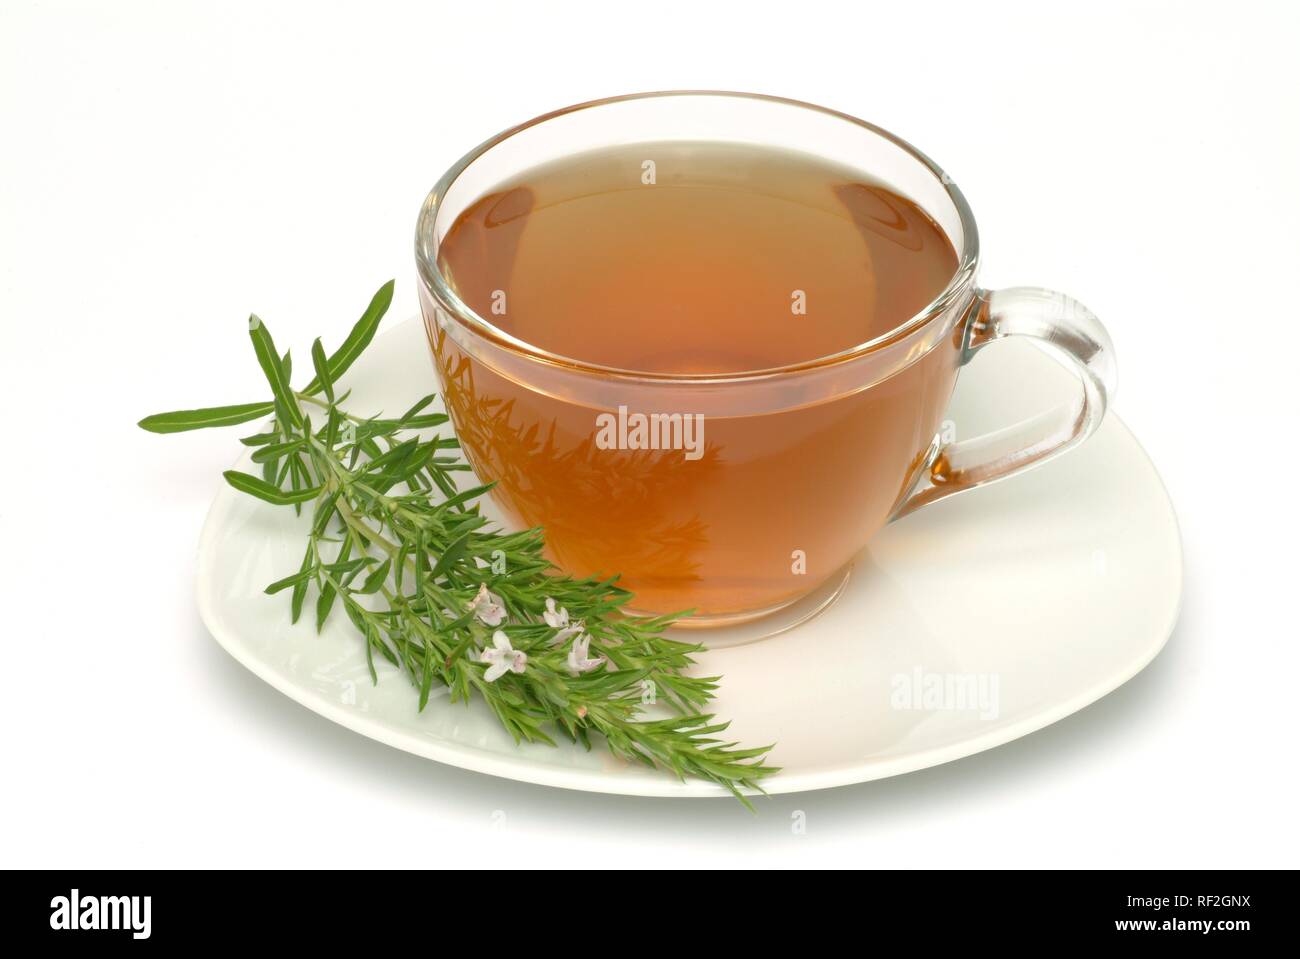 El verano sabroso (Satureja hortensis), té de hierbas Foto de stock